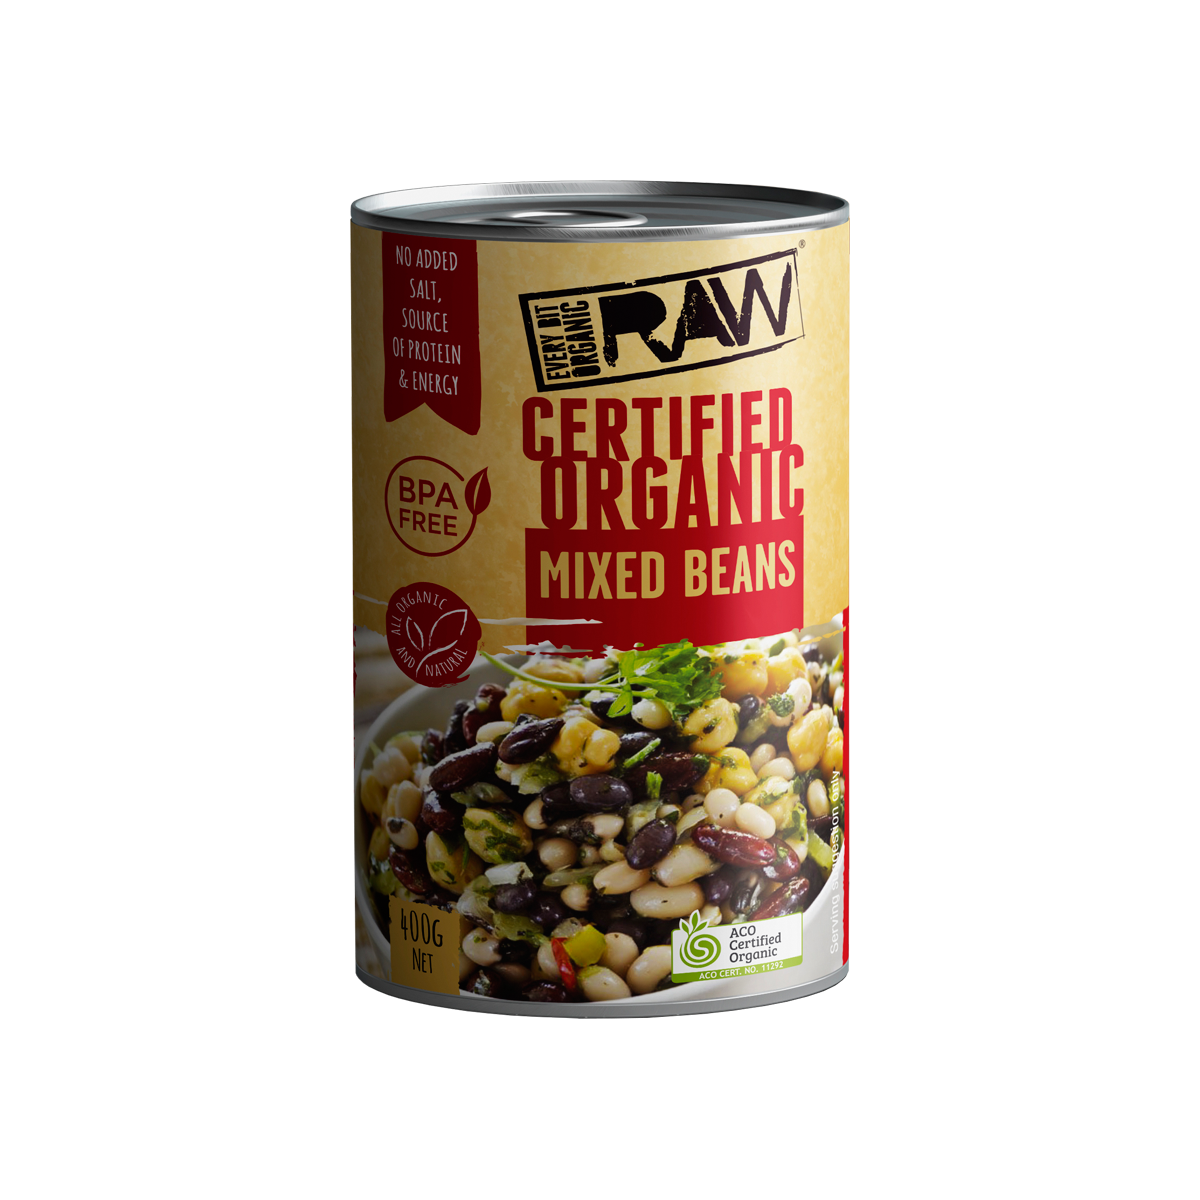 Every Bit Organic Mixed Beans 400g